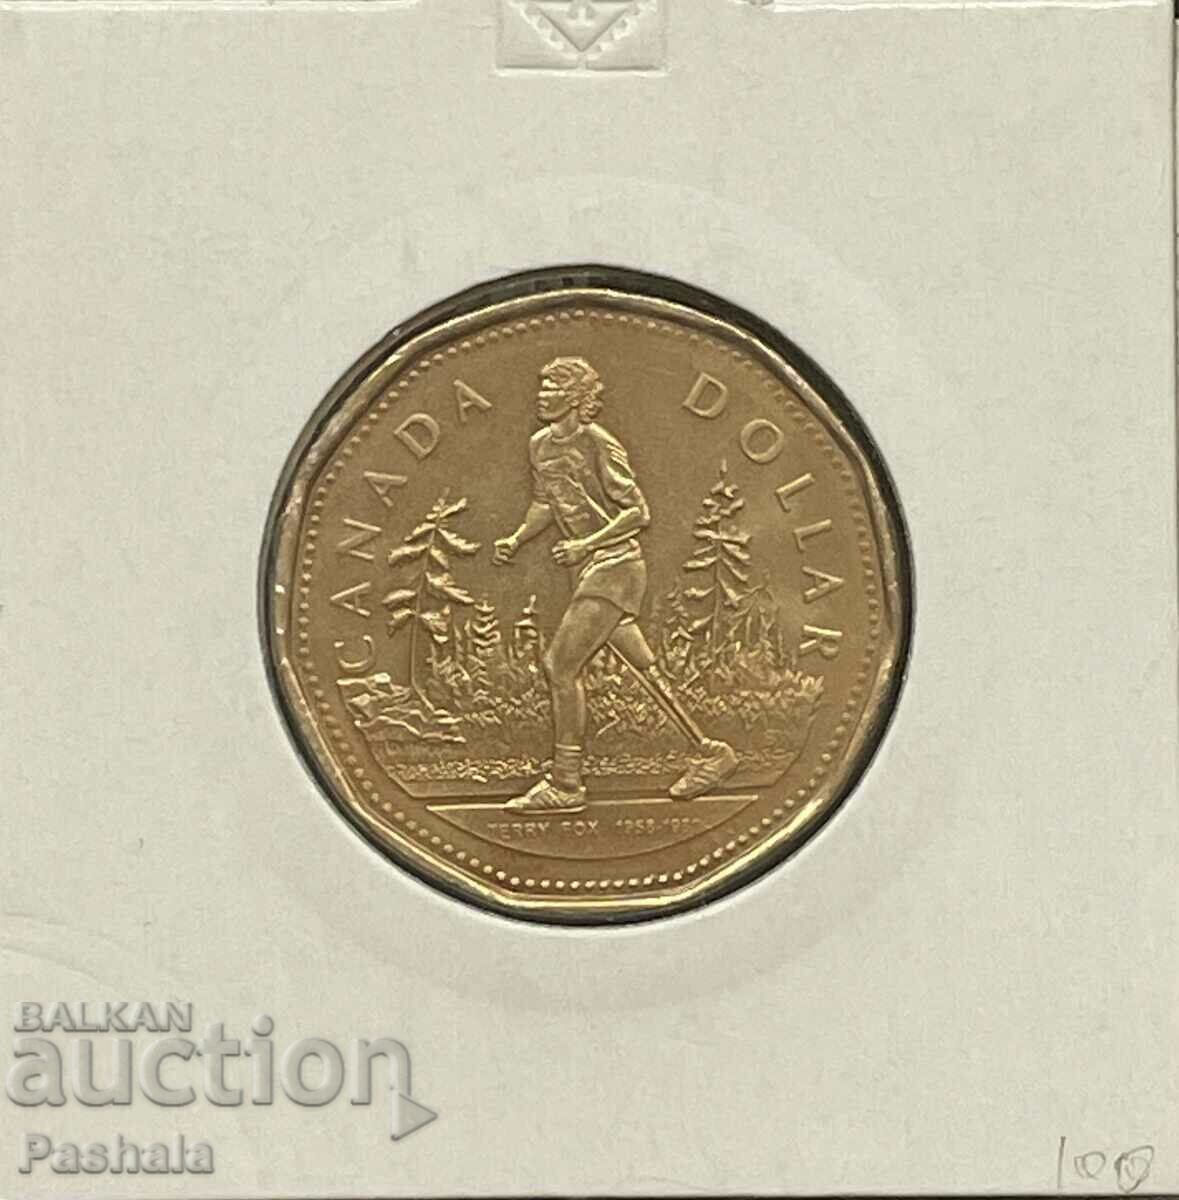 Canada $1 2005